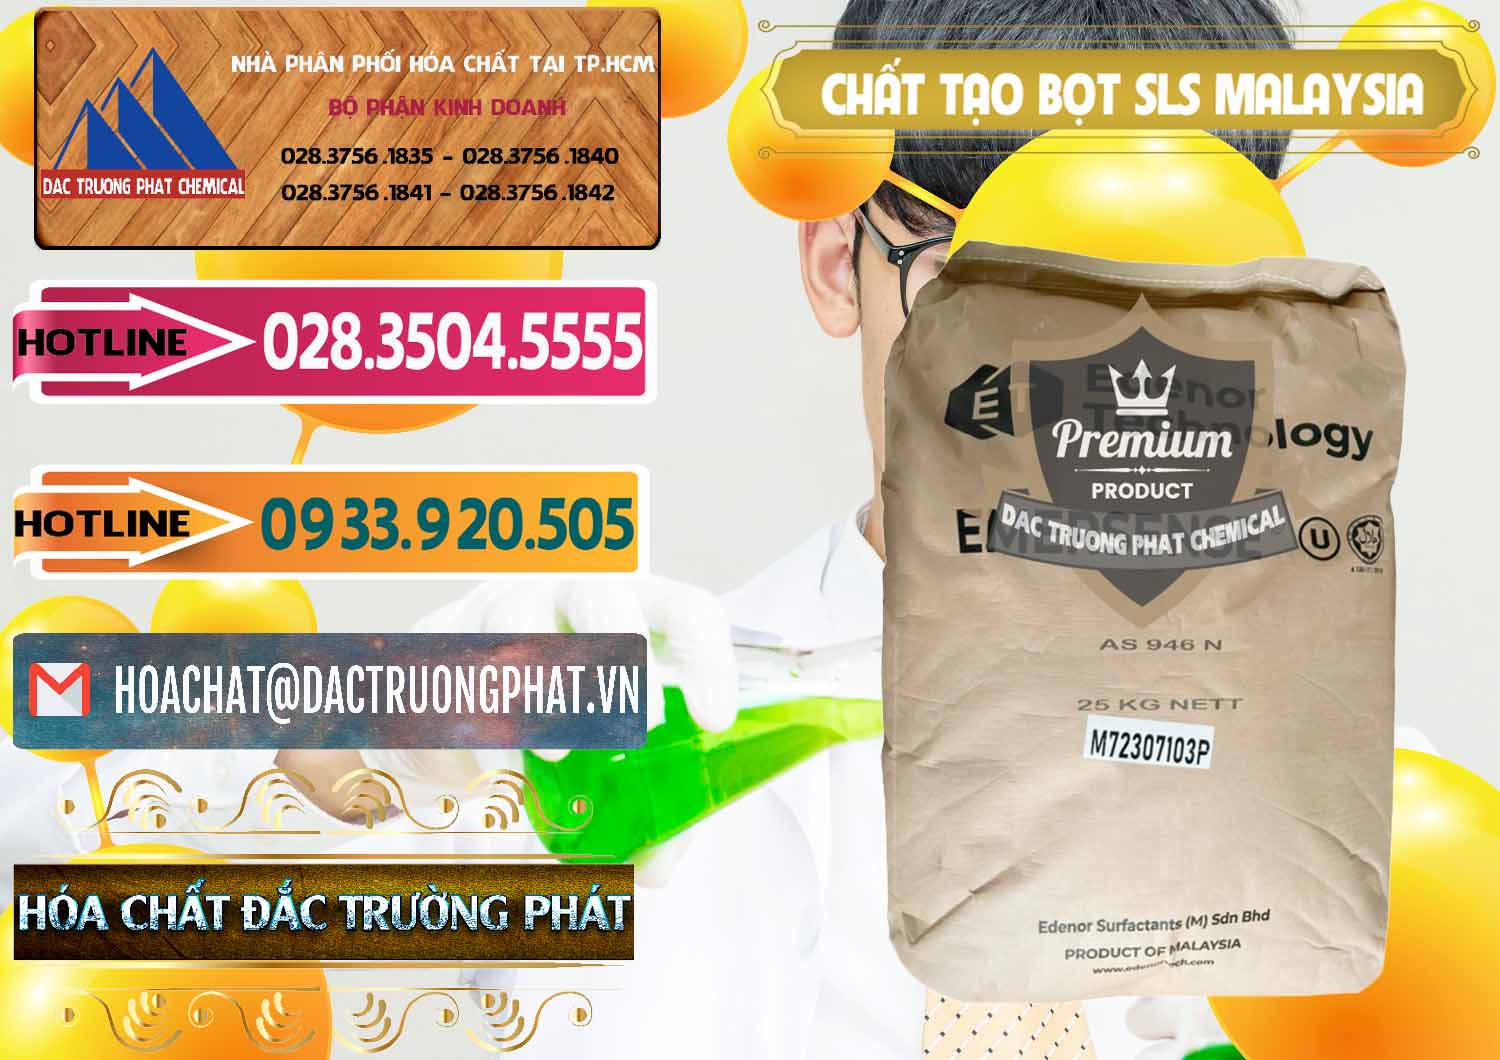 Cung ứng & bán Chất Tạo Bọt SLS Emersense Mã Lai Malaysia - 0381 - Đơn vị cung cấp & phân phối hóa chất tại TP.HCM - dactruongphat.vn